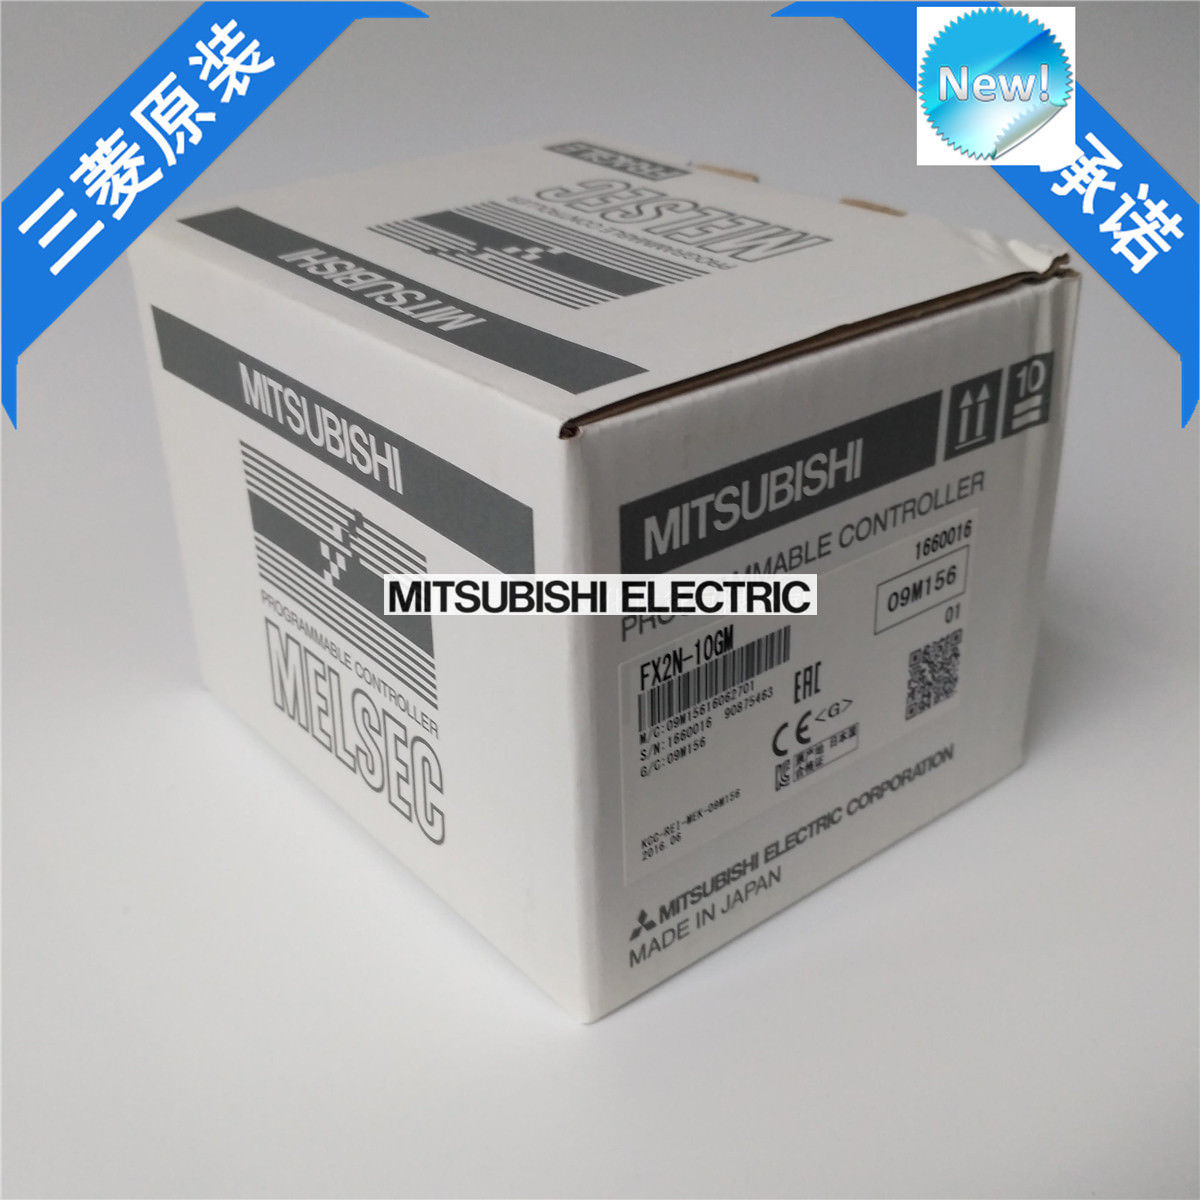 New Mitsubishi PLC FX2N-10GM In Box FX2N10GM